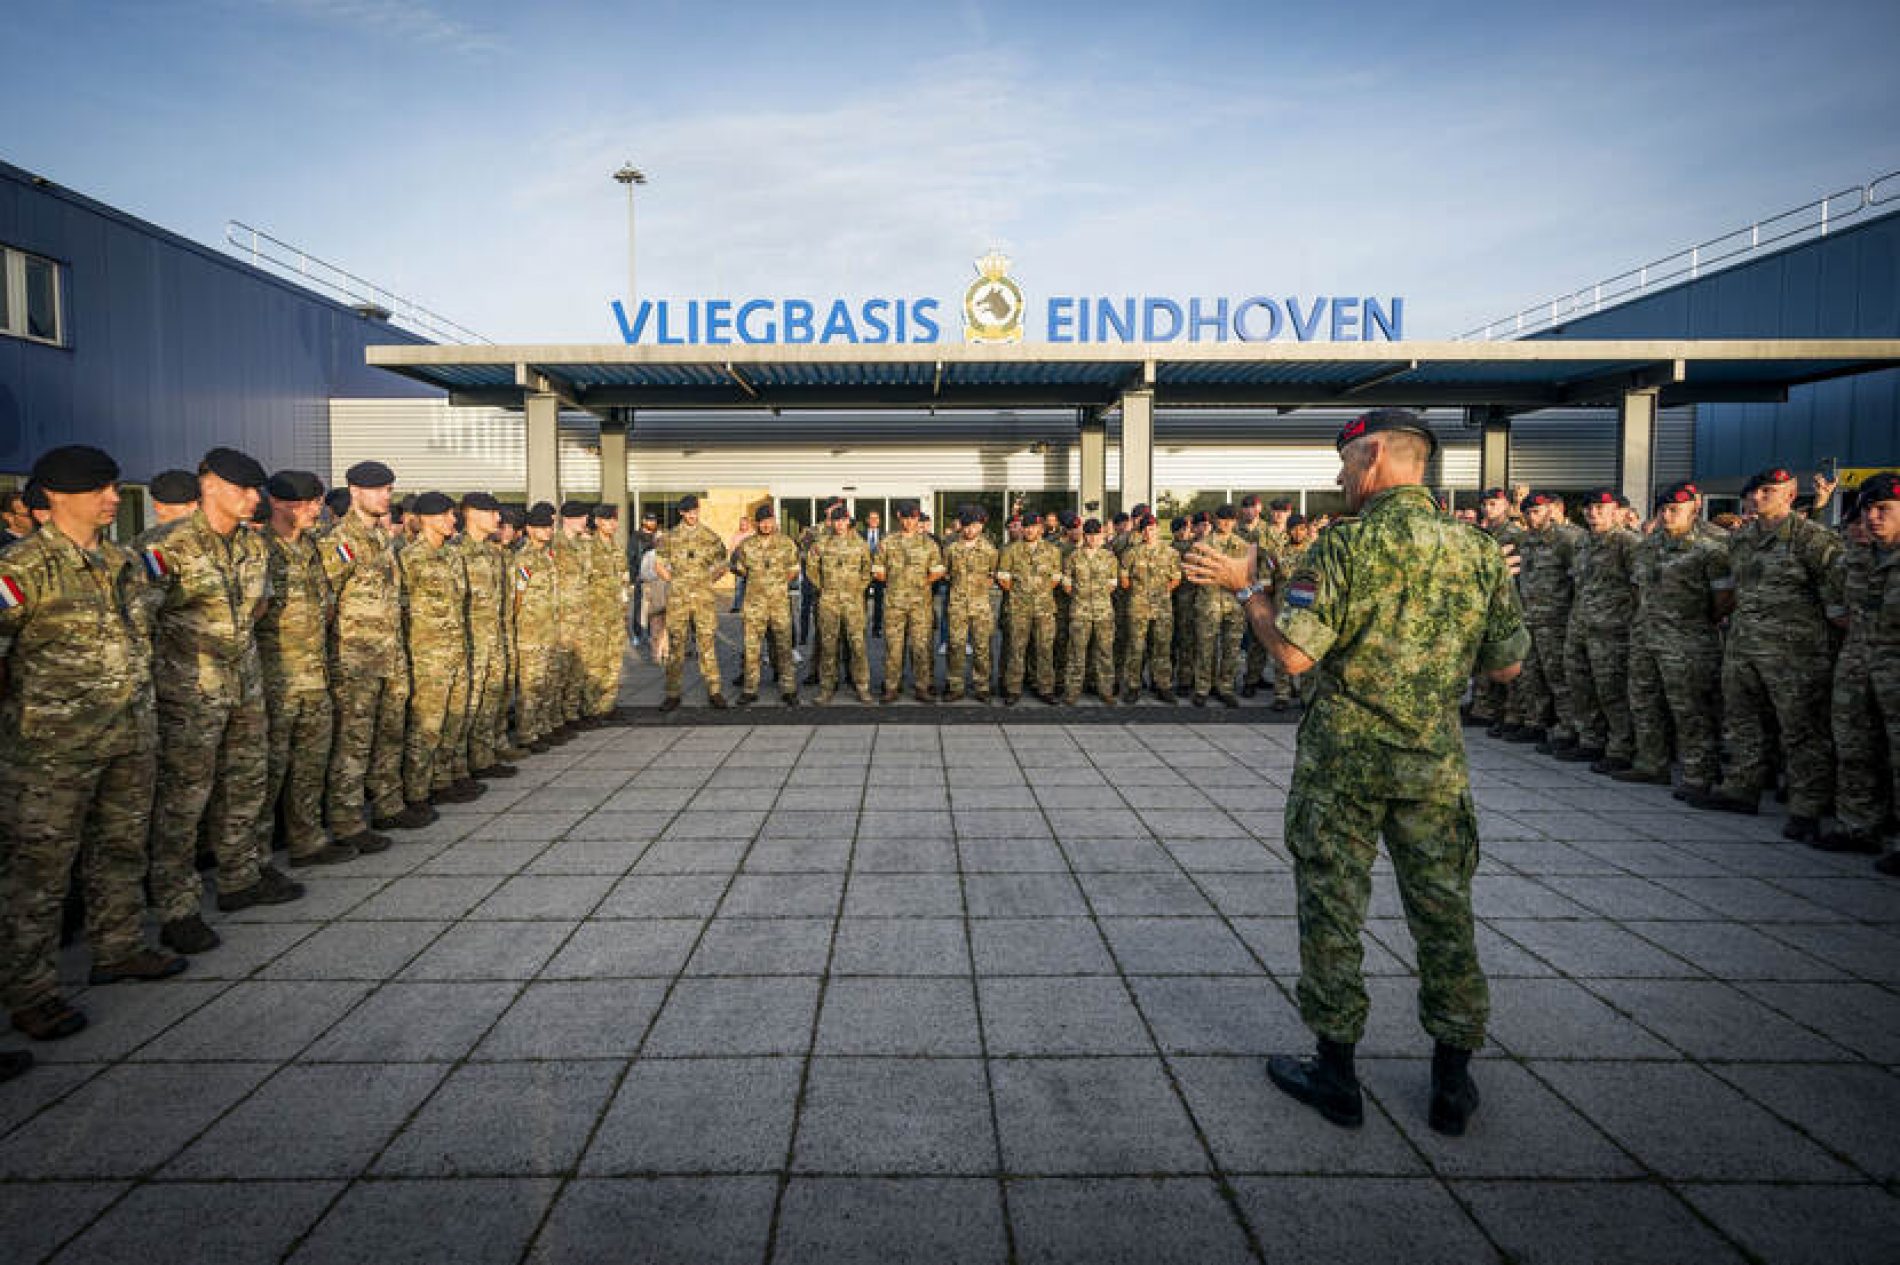 Holandija poslala 100 vojnika u Bosnu i Hercegovinu u okviru EUFOR-a